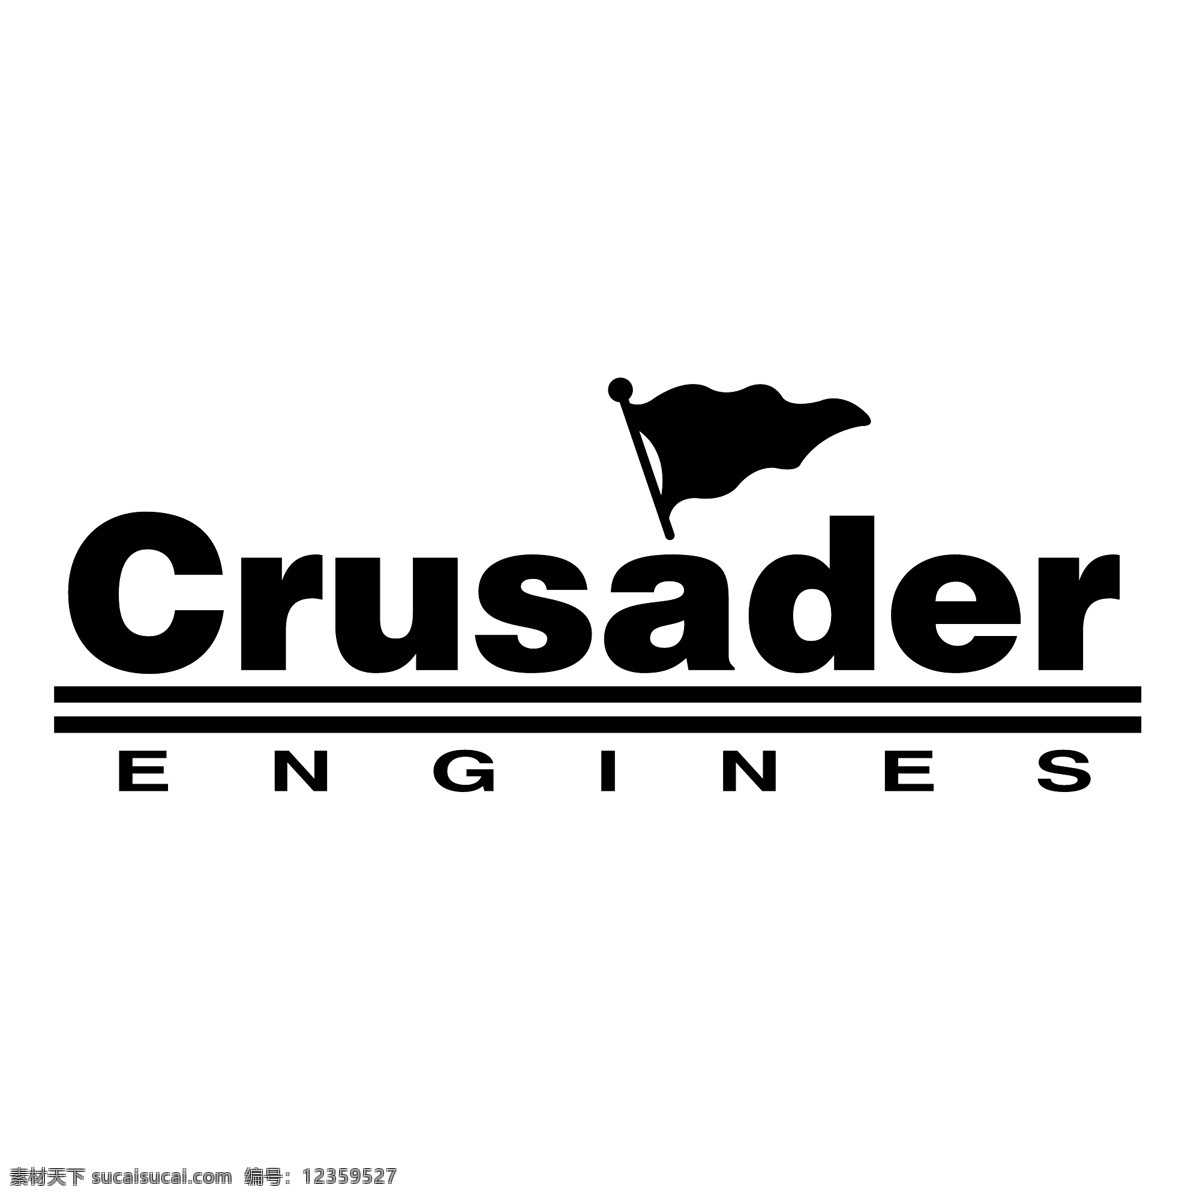 十字军 引擎 自由 战士 标识 psd源文件 logo设计